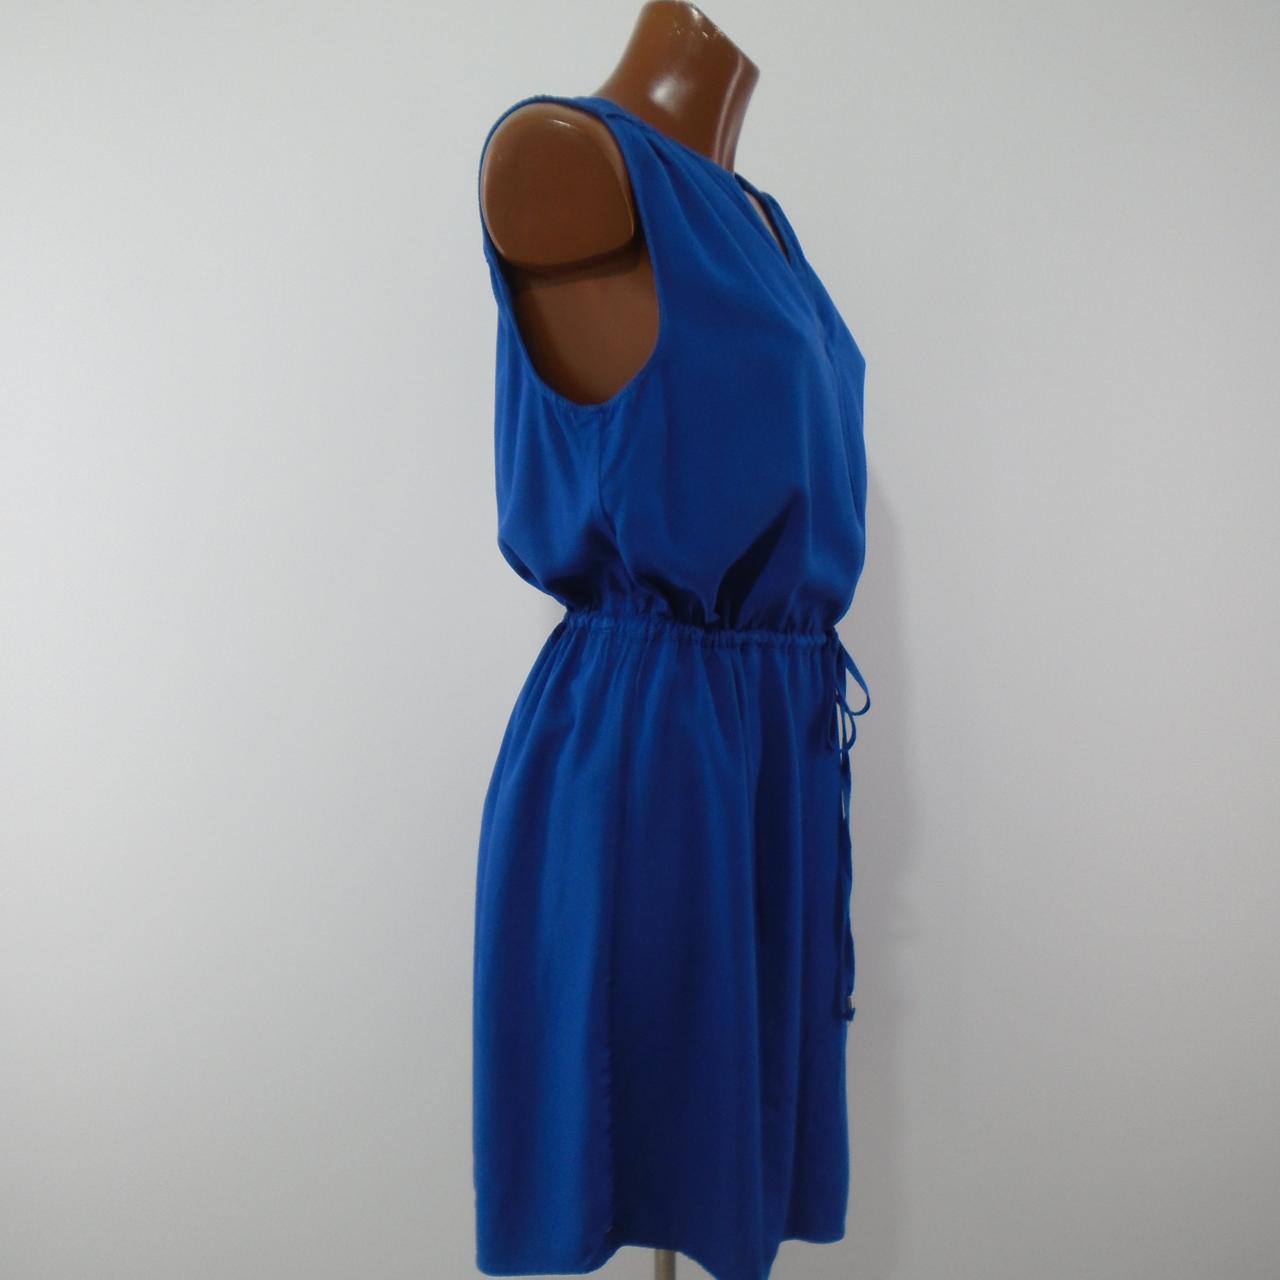 Women's Dress Tommy Hilfiger. Dark blue. L. Used. Good